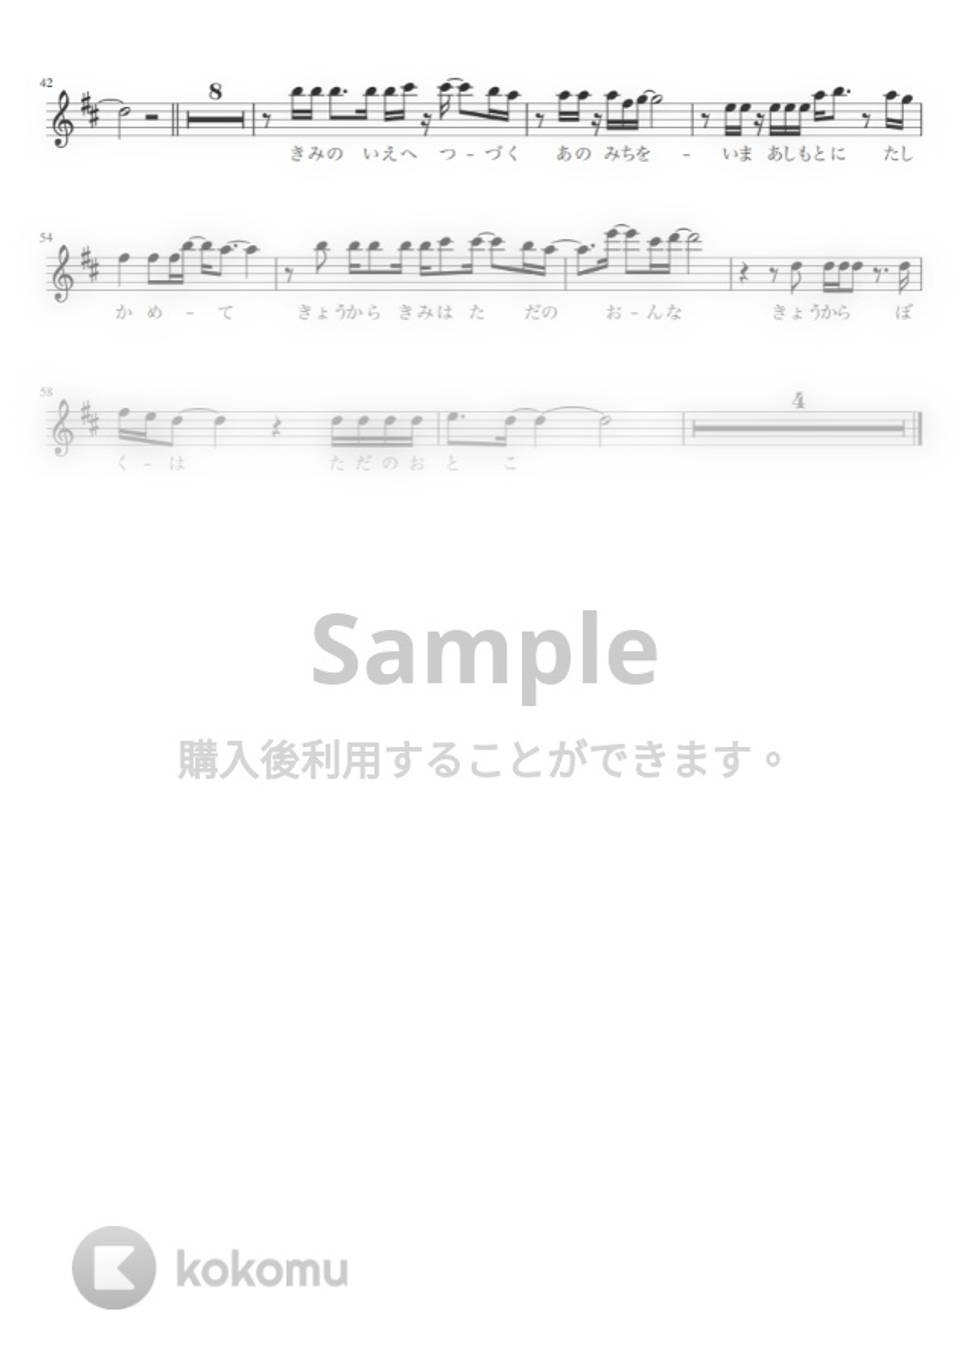 チューリップ - 青春の影(in B♭) by 仲宗根隆